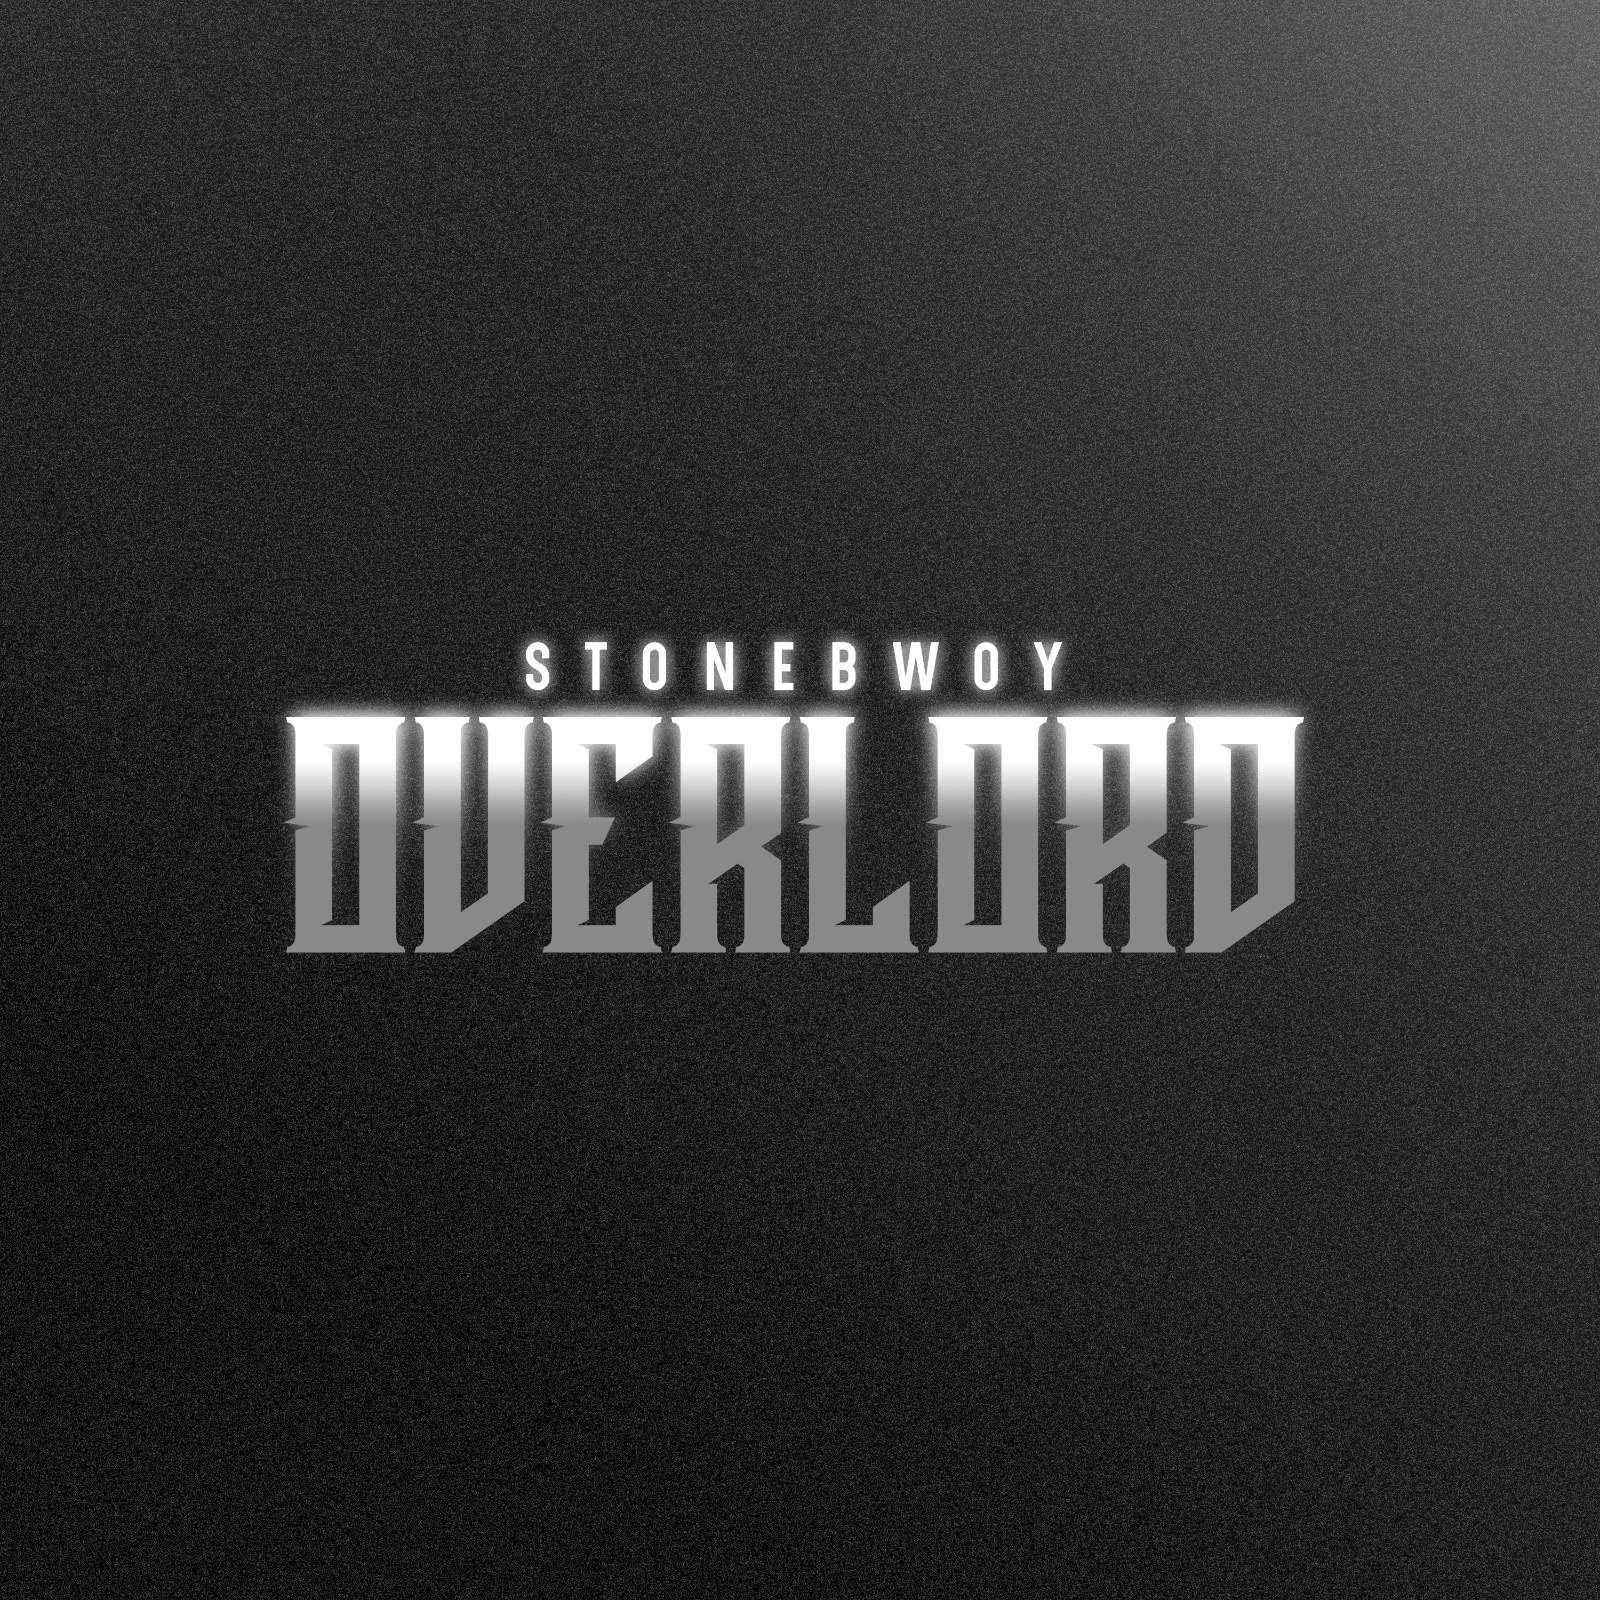 Stonebwoy - Overload